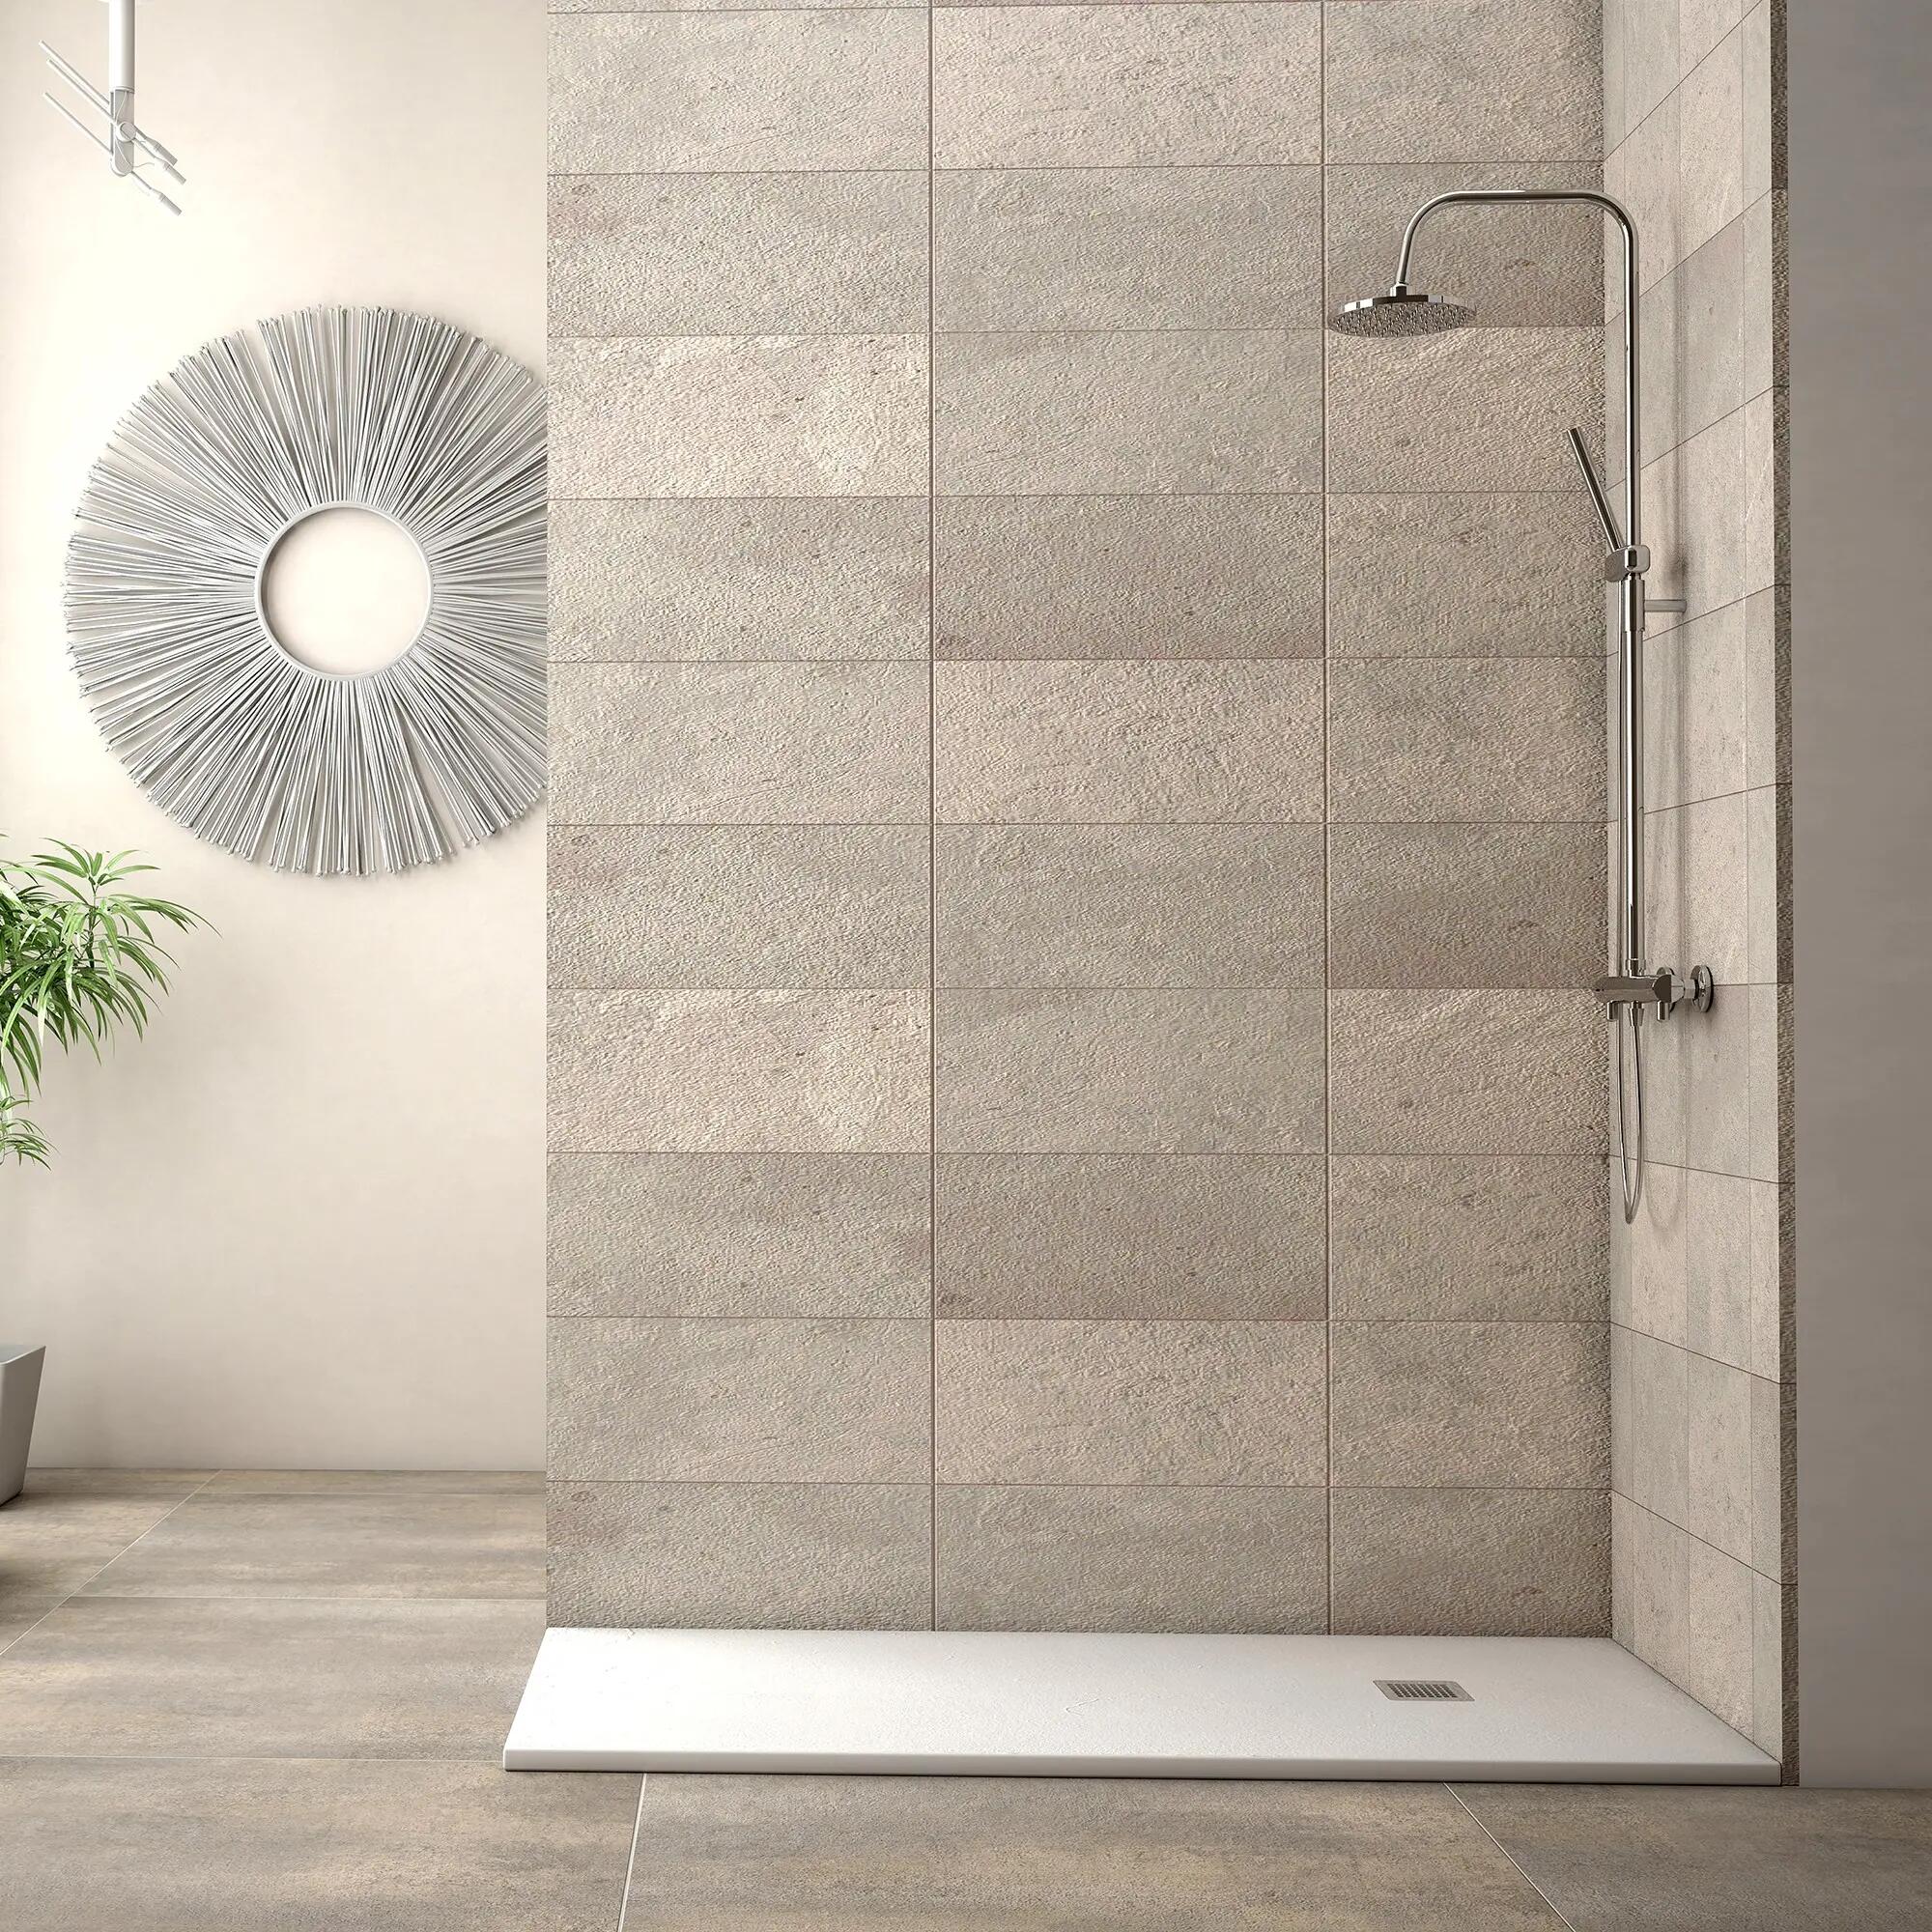 Plato de ducha rectangular moderno 120x80 efecto terciopelo